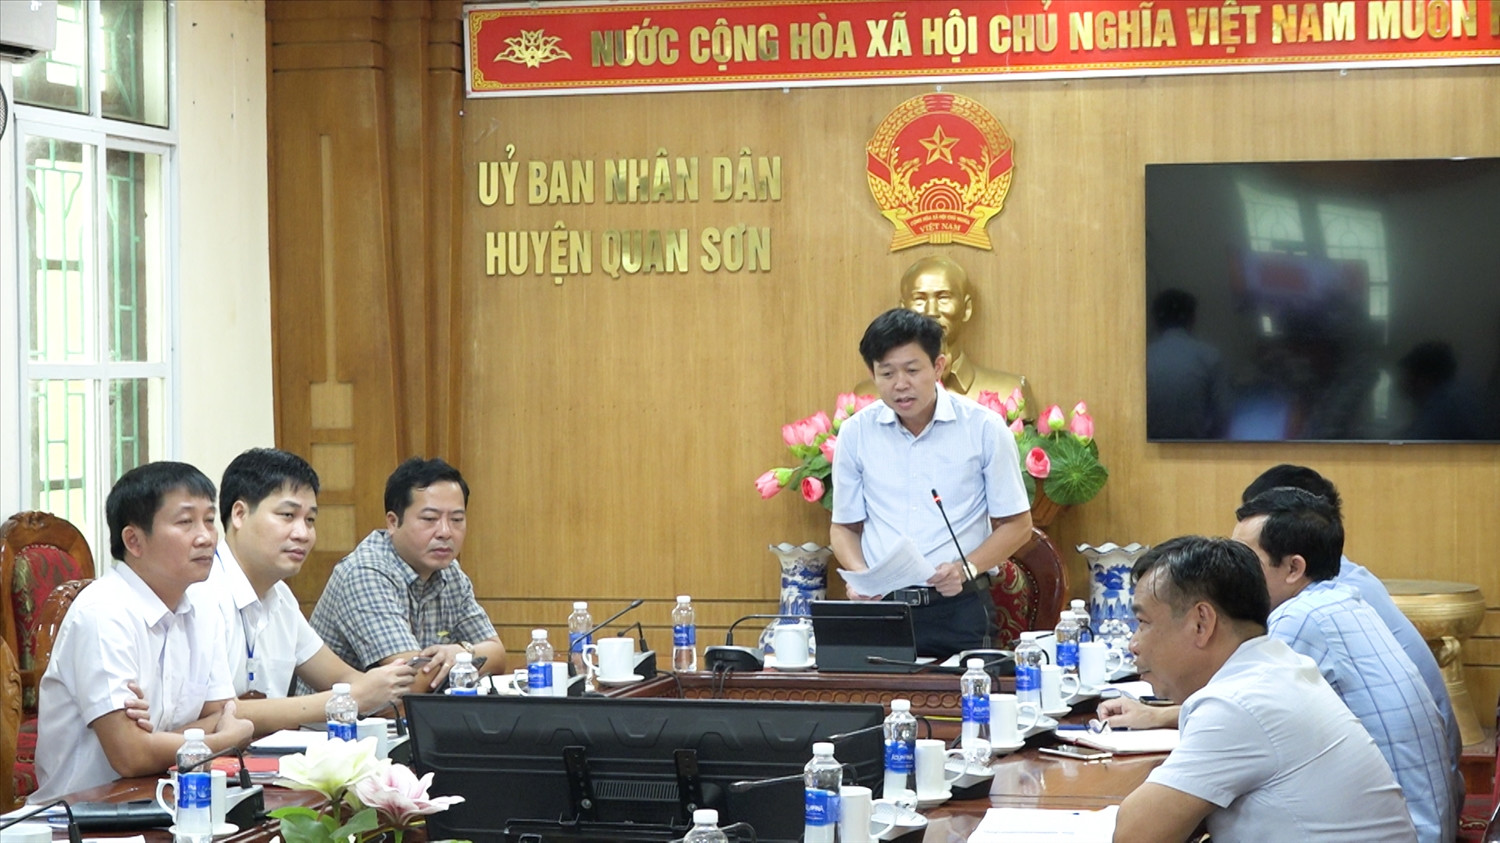 Nhiều công trình phục vụ dân sinh từ nguồn vốn Chương trình MTQG 1719, đã và đang được huyện Quan Sơn quyết liệt thực hiện nhằm góp phần giảm bớt khó khăn cho người dân.